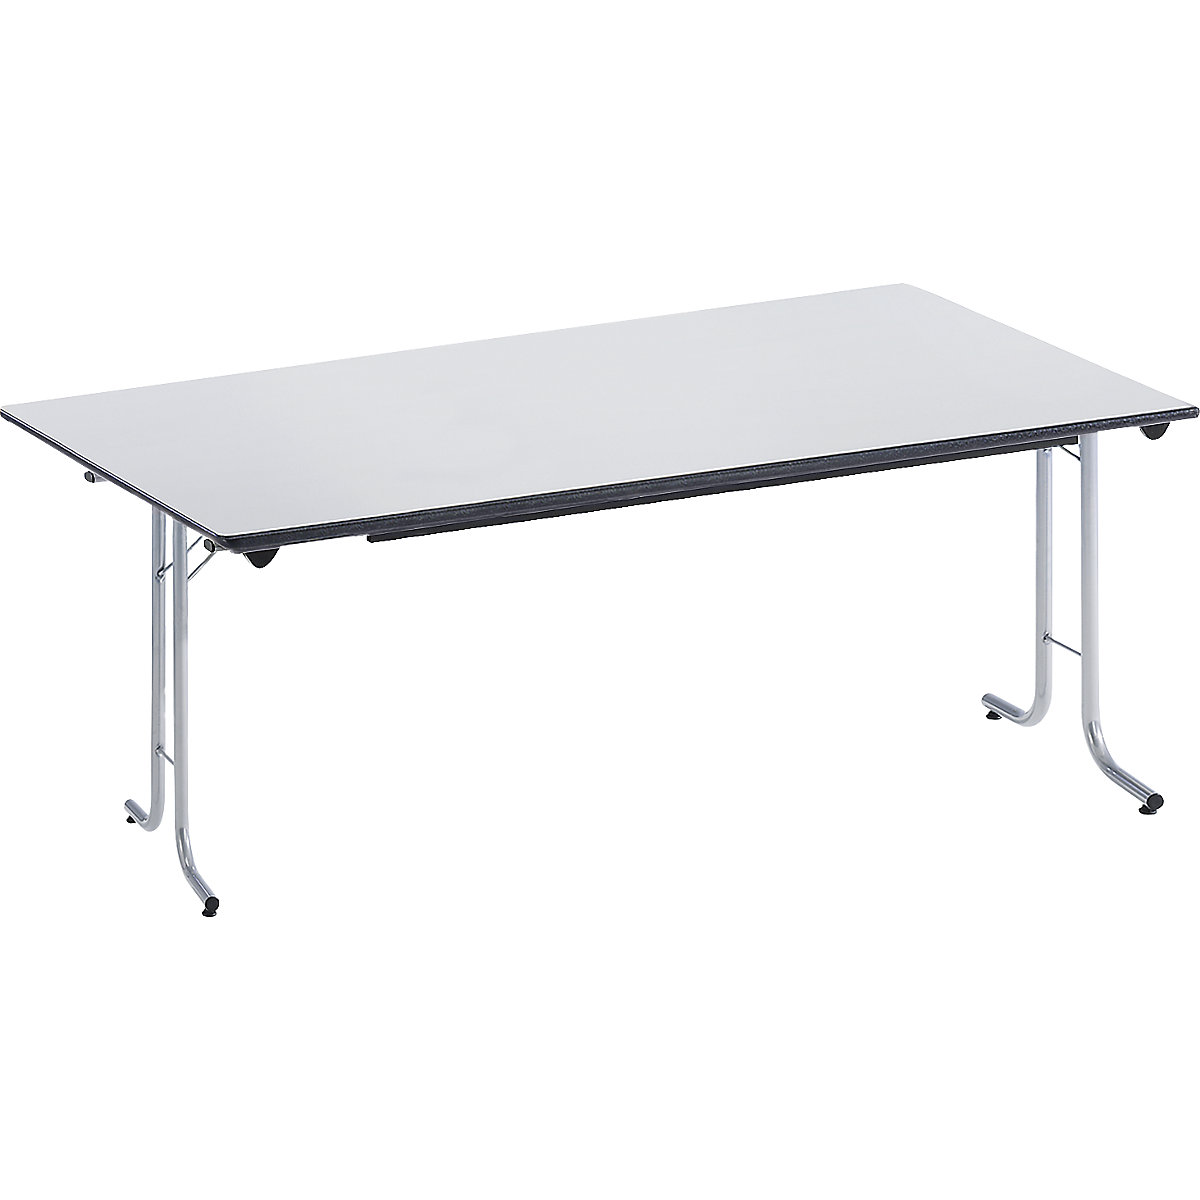 Mesa plegable, con bordes redondeados, armazón de tubo redondo, tablero rectangular, 1600 x 800 mm, armazón en color aluminio, tablero gris luminoso-4